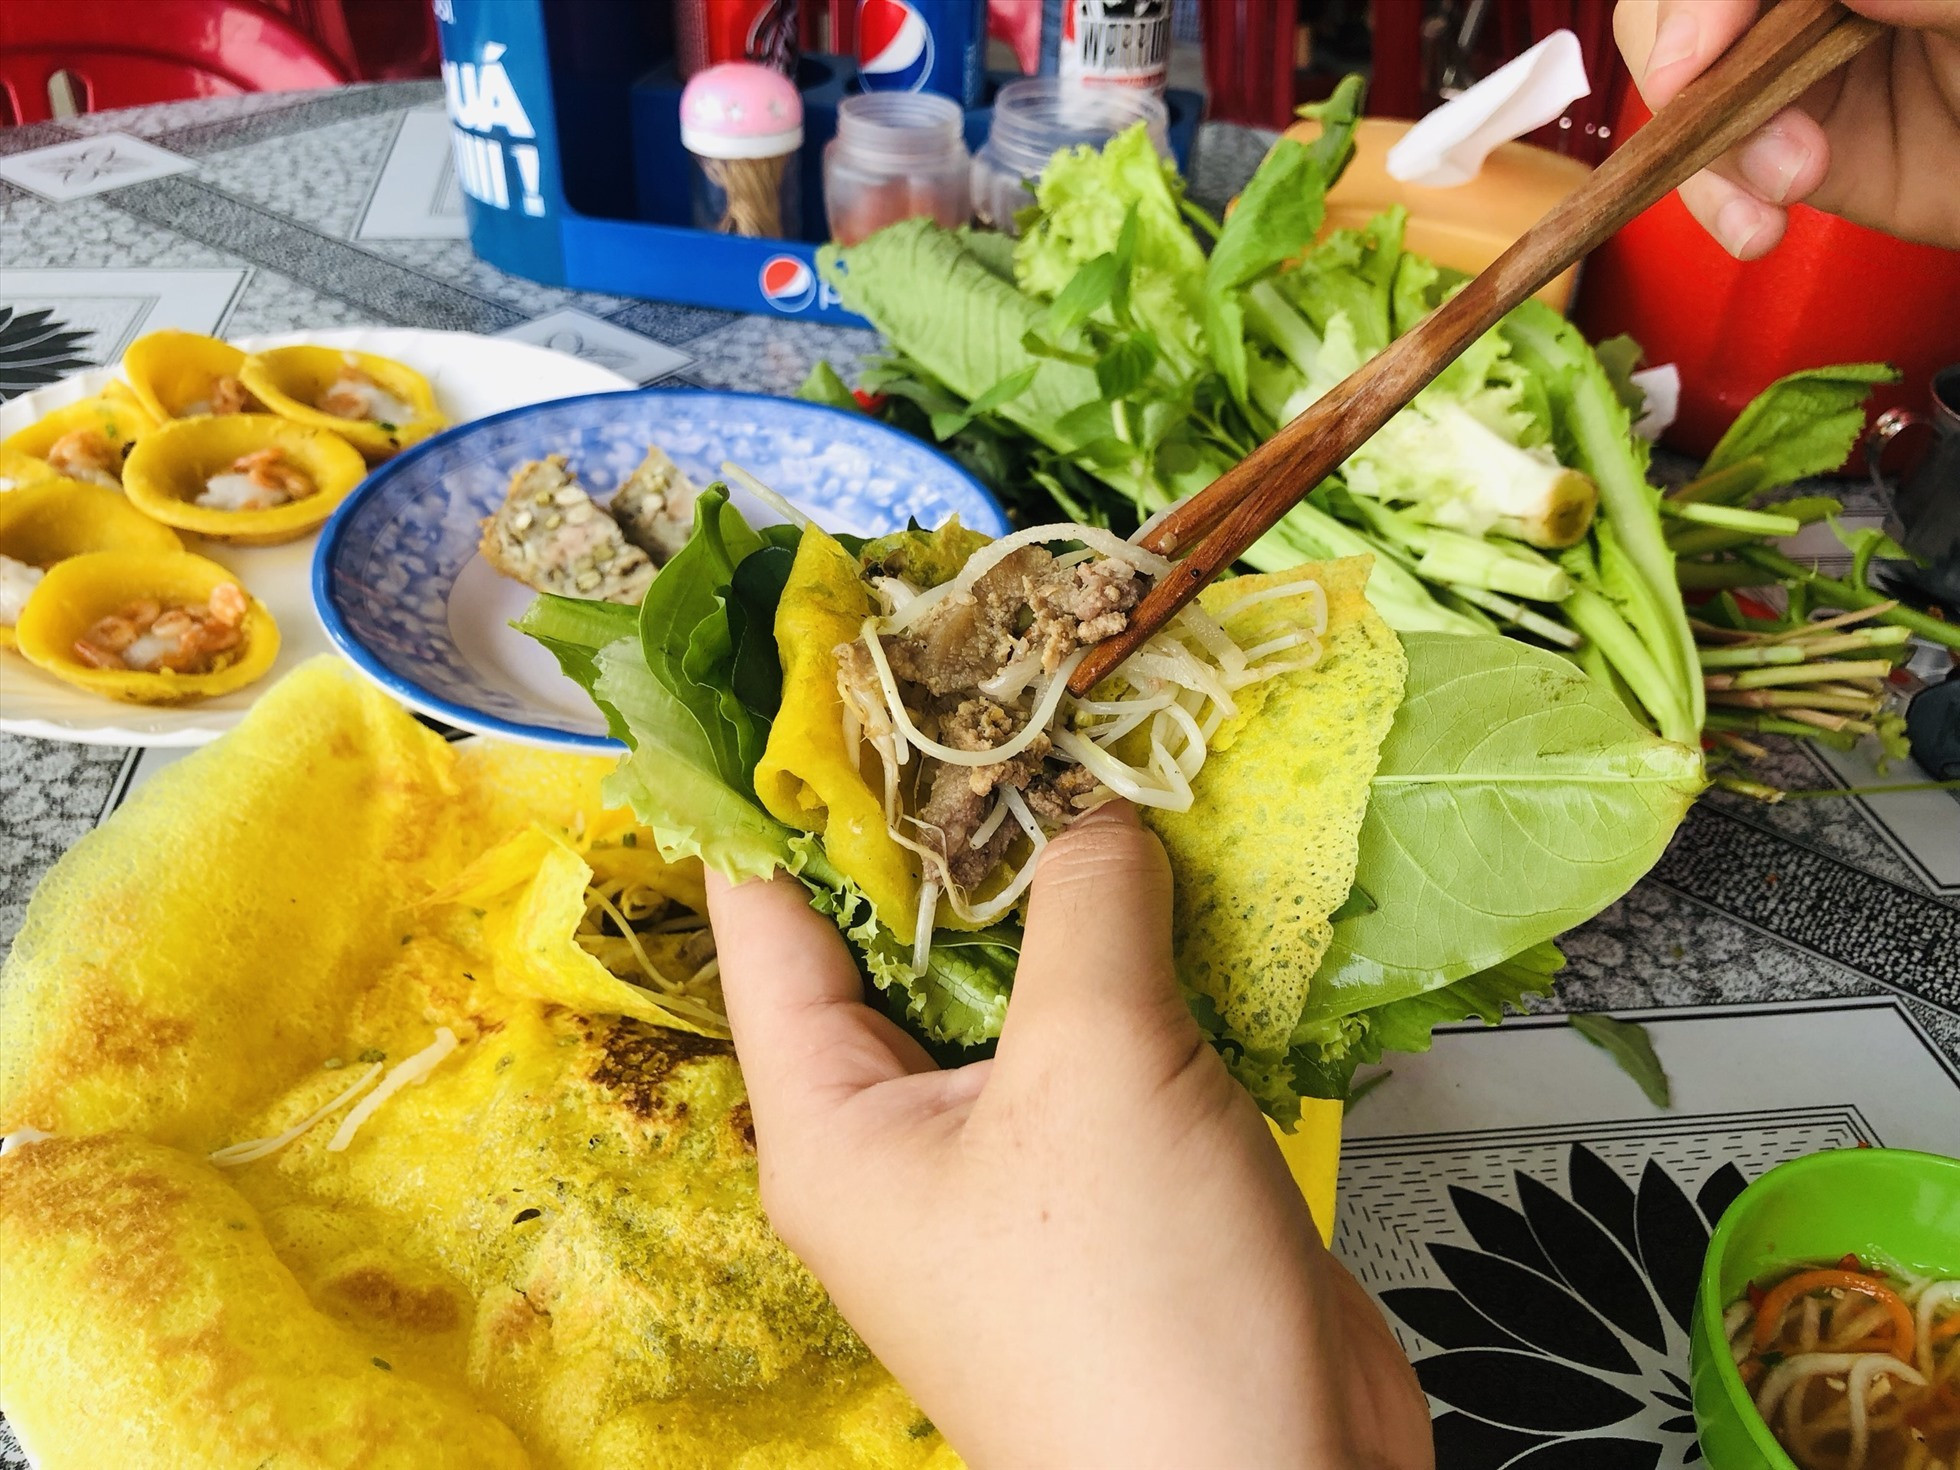 9 đặc sản dân dã làm nên tên tuổi ẩm thực Việt Nam